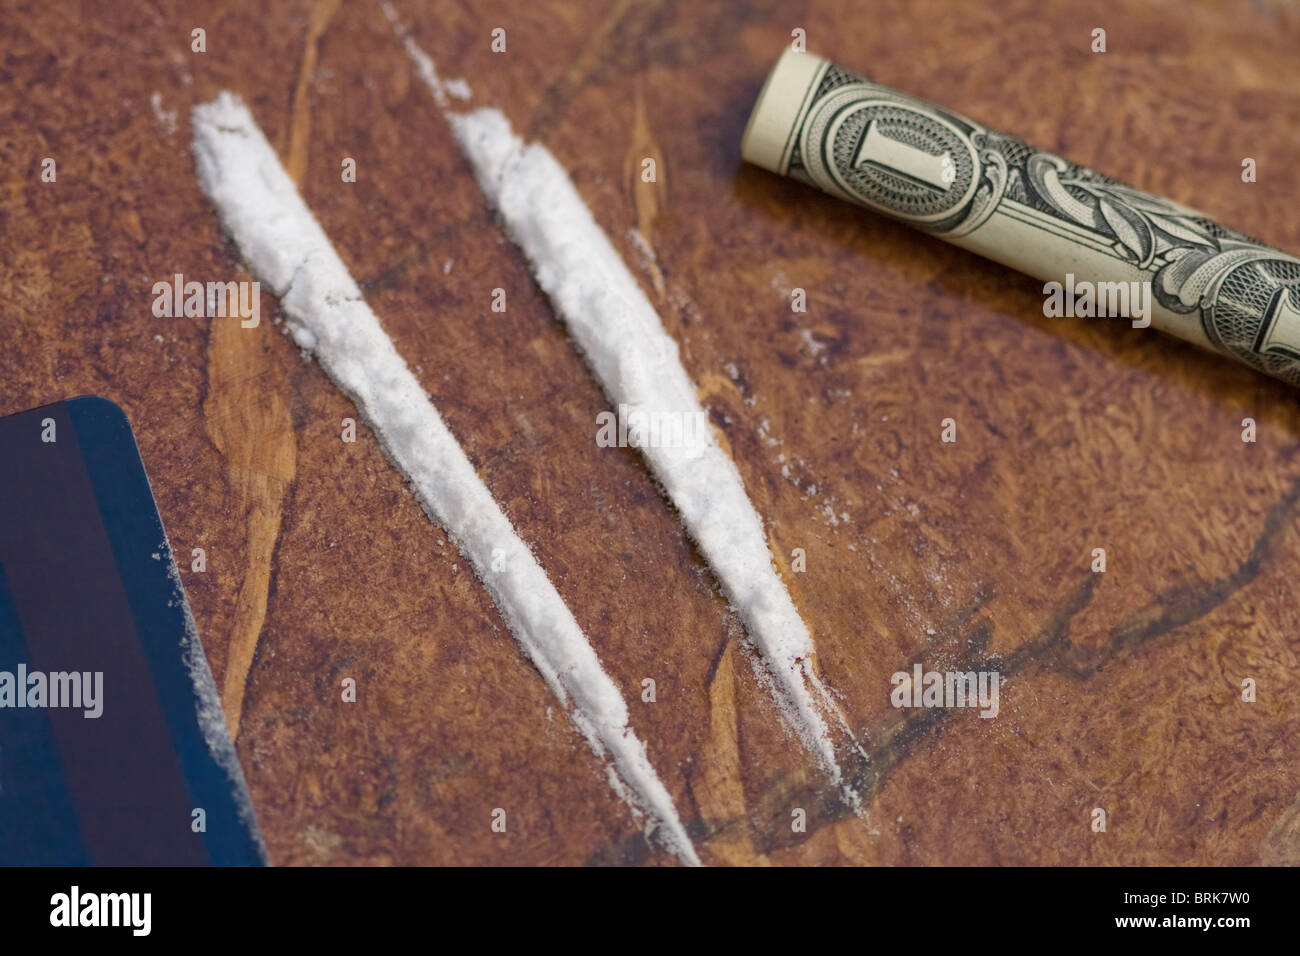 La cocaïne, l'argent et une carte de crédit sur une table. Banque D'Images